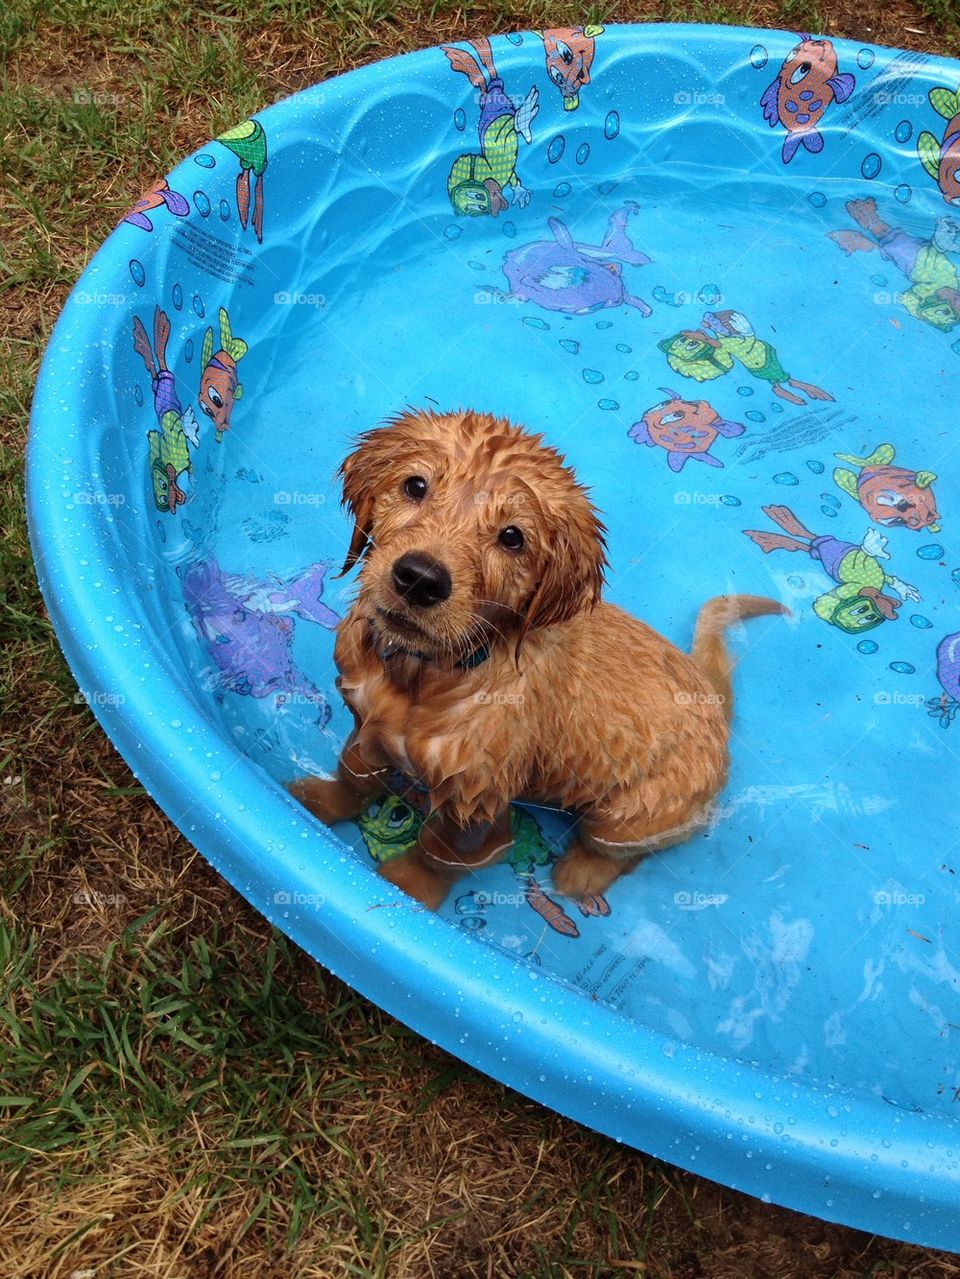 Water Puppy